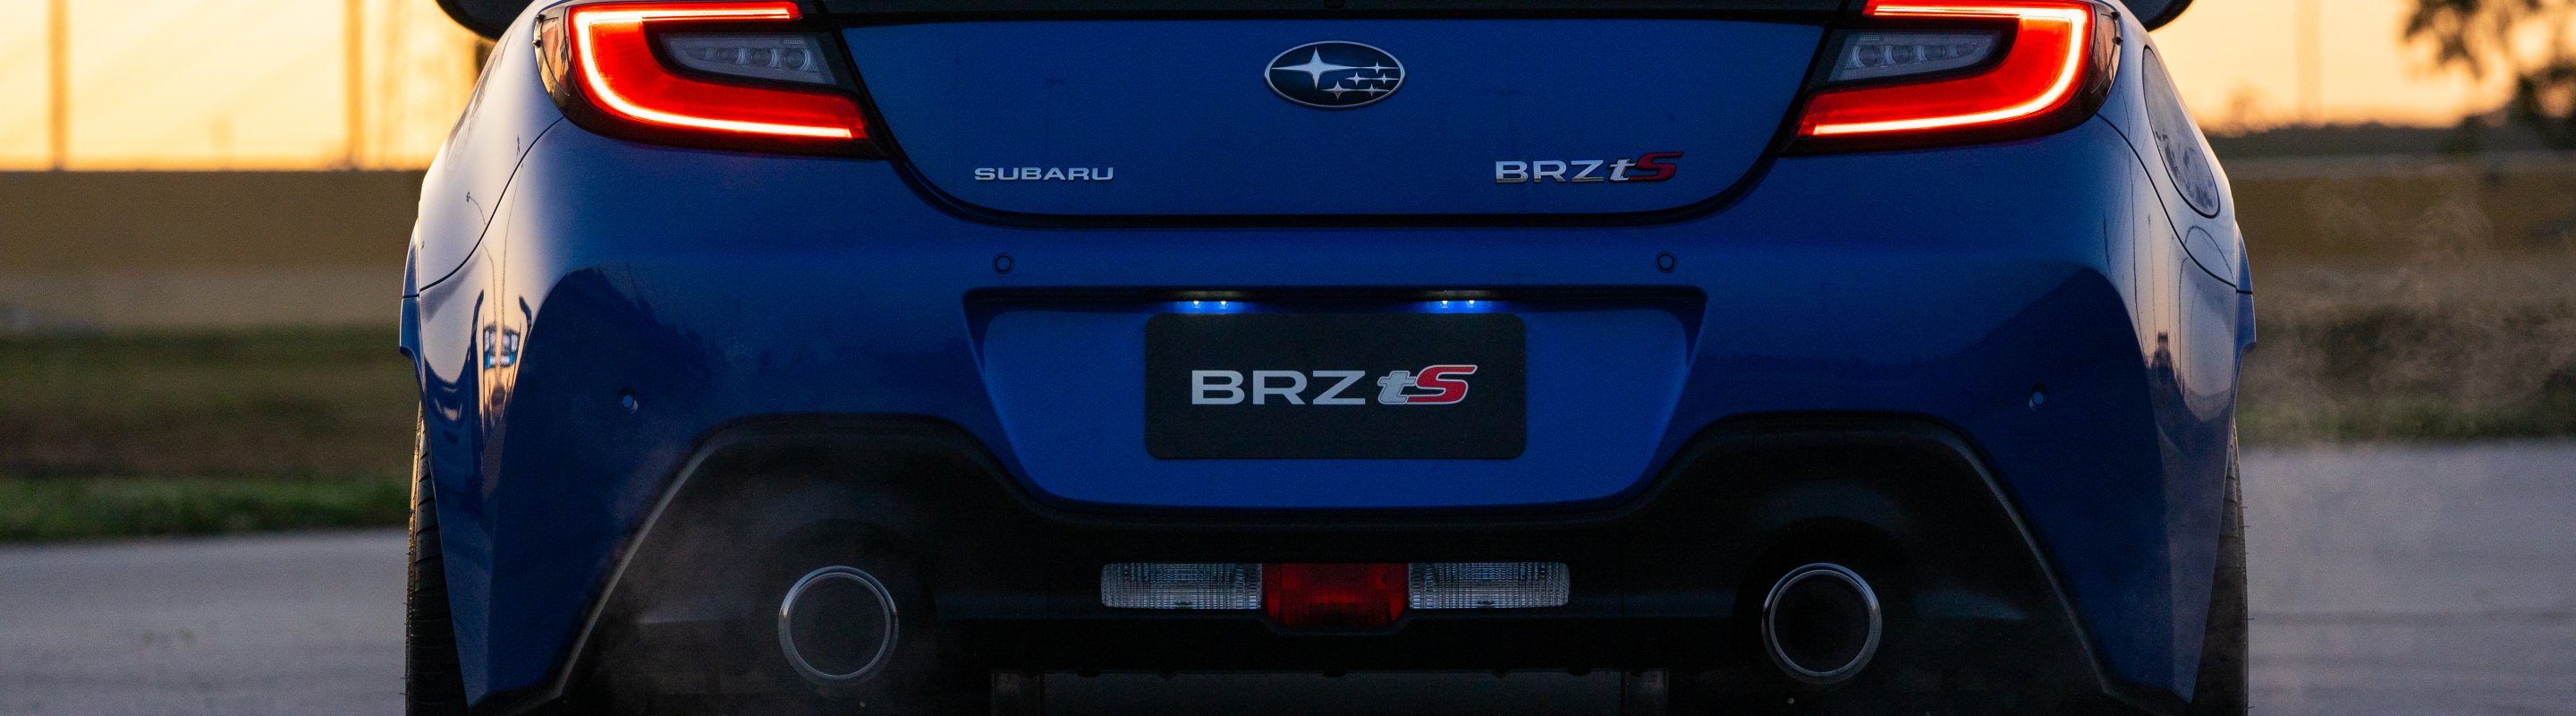 BRZ tS confirmed for Australia: Subaru unveils model at SubiNats